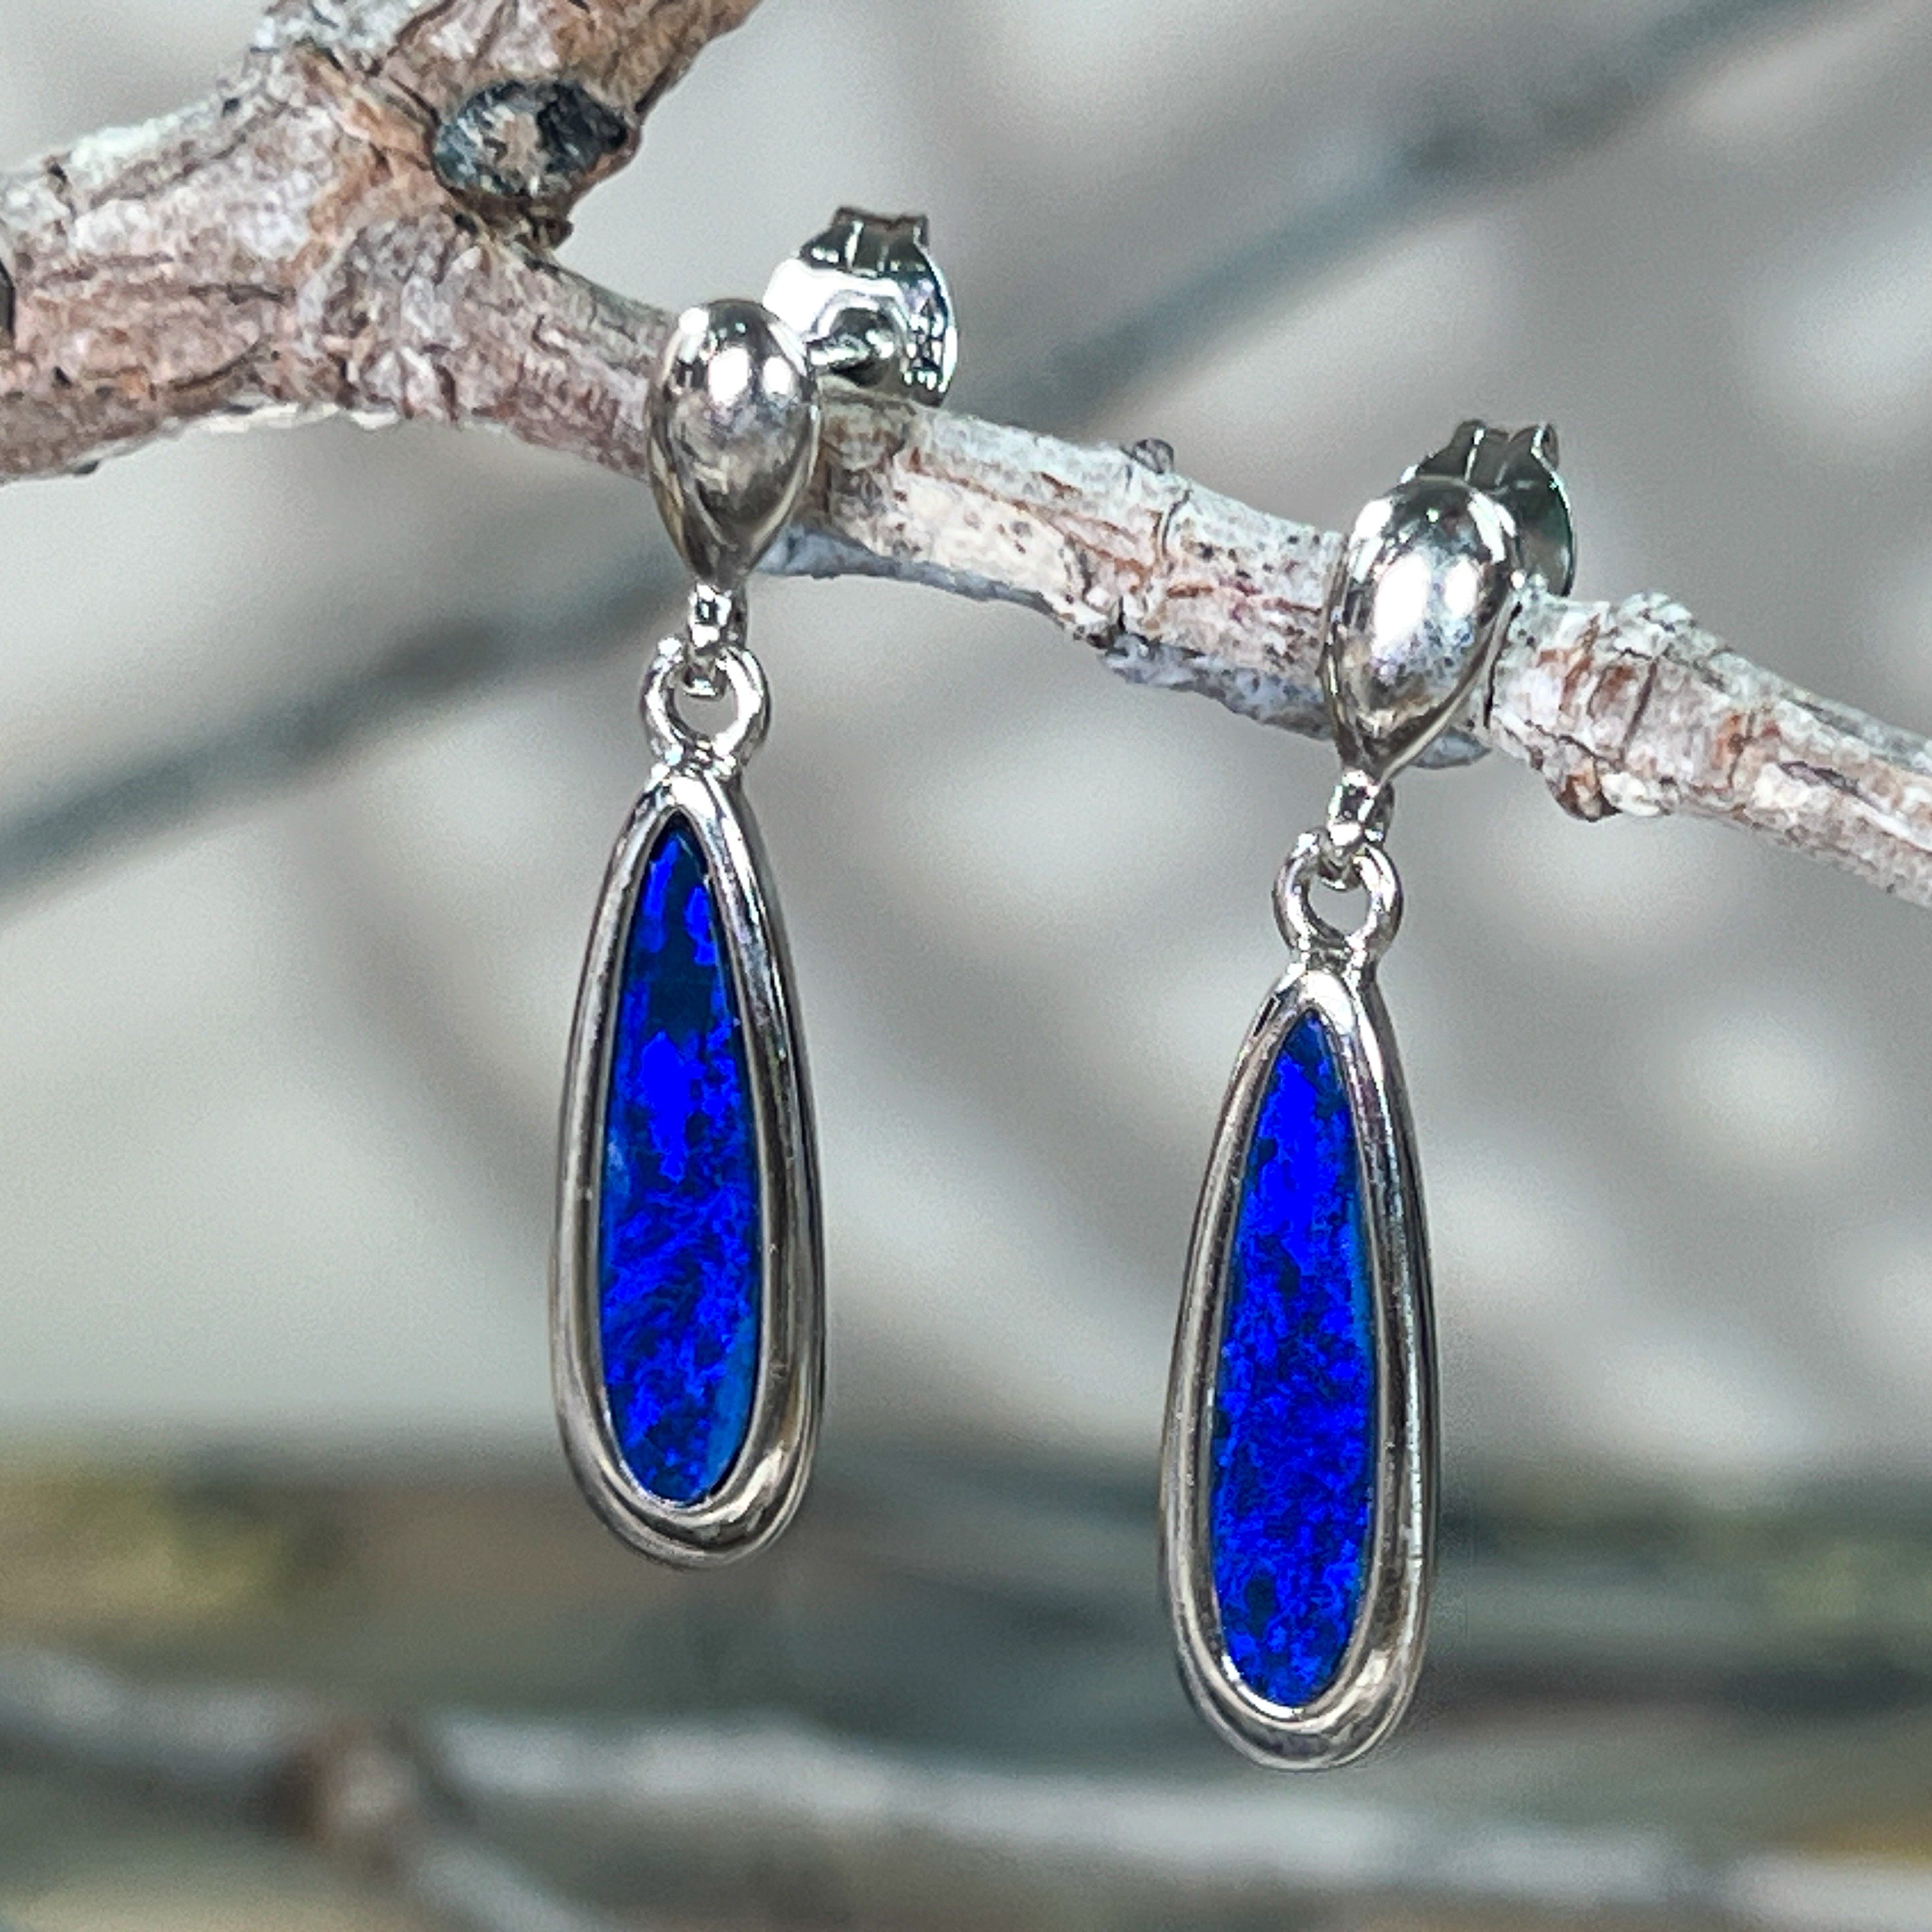 Sterling Silver dangling long drop earrings with blue opal doublets - Masterpiece Jewellery Opal & Gems Sydney Australia | Online Shop